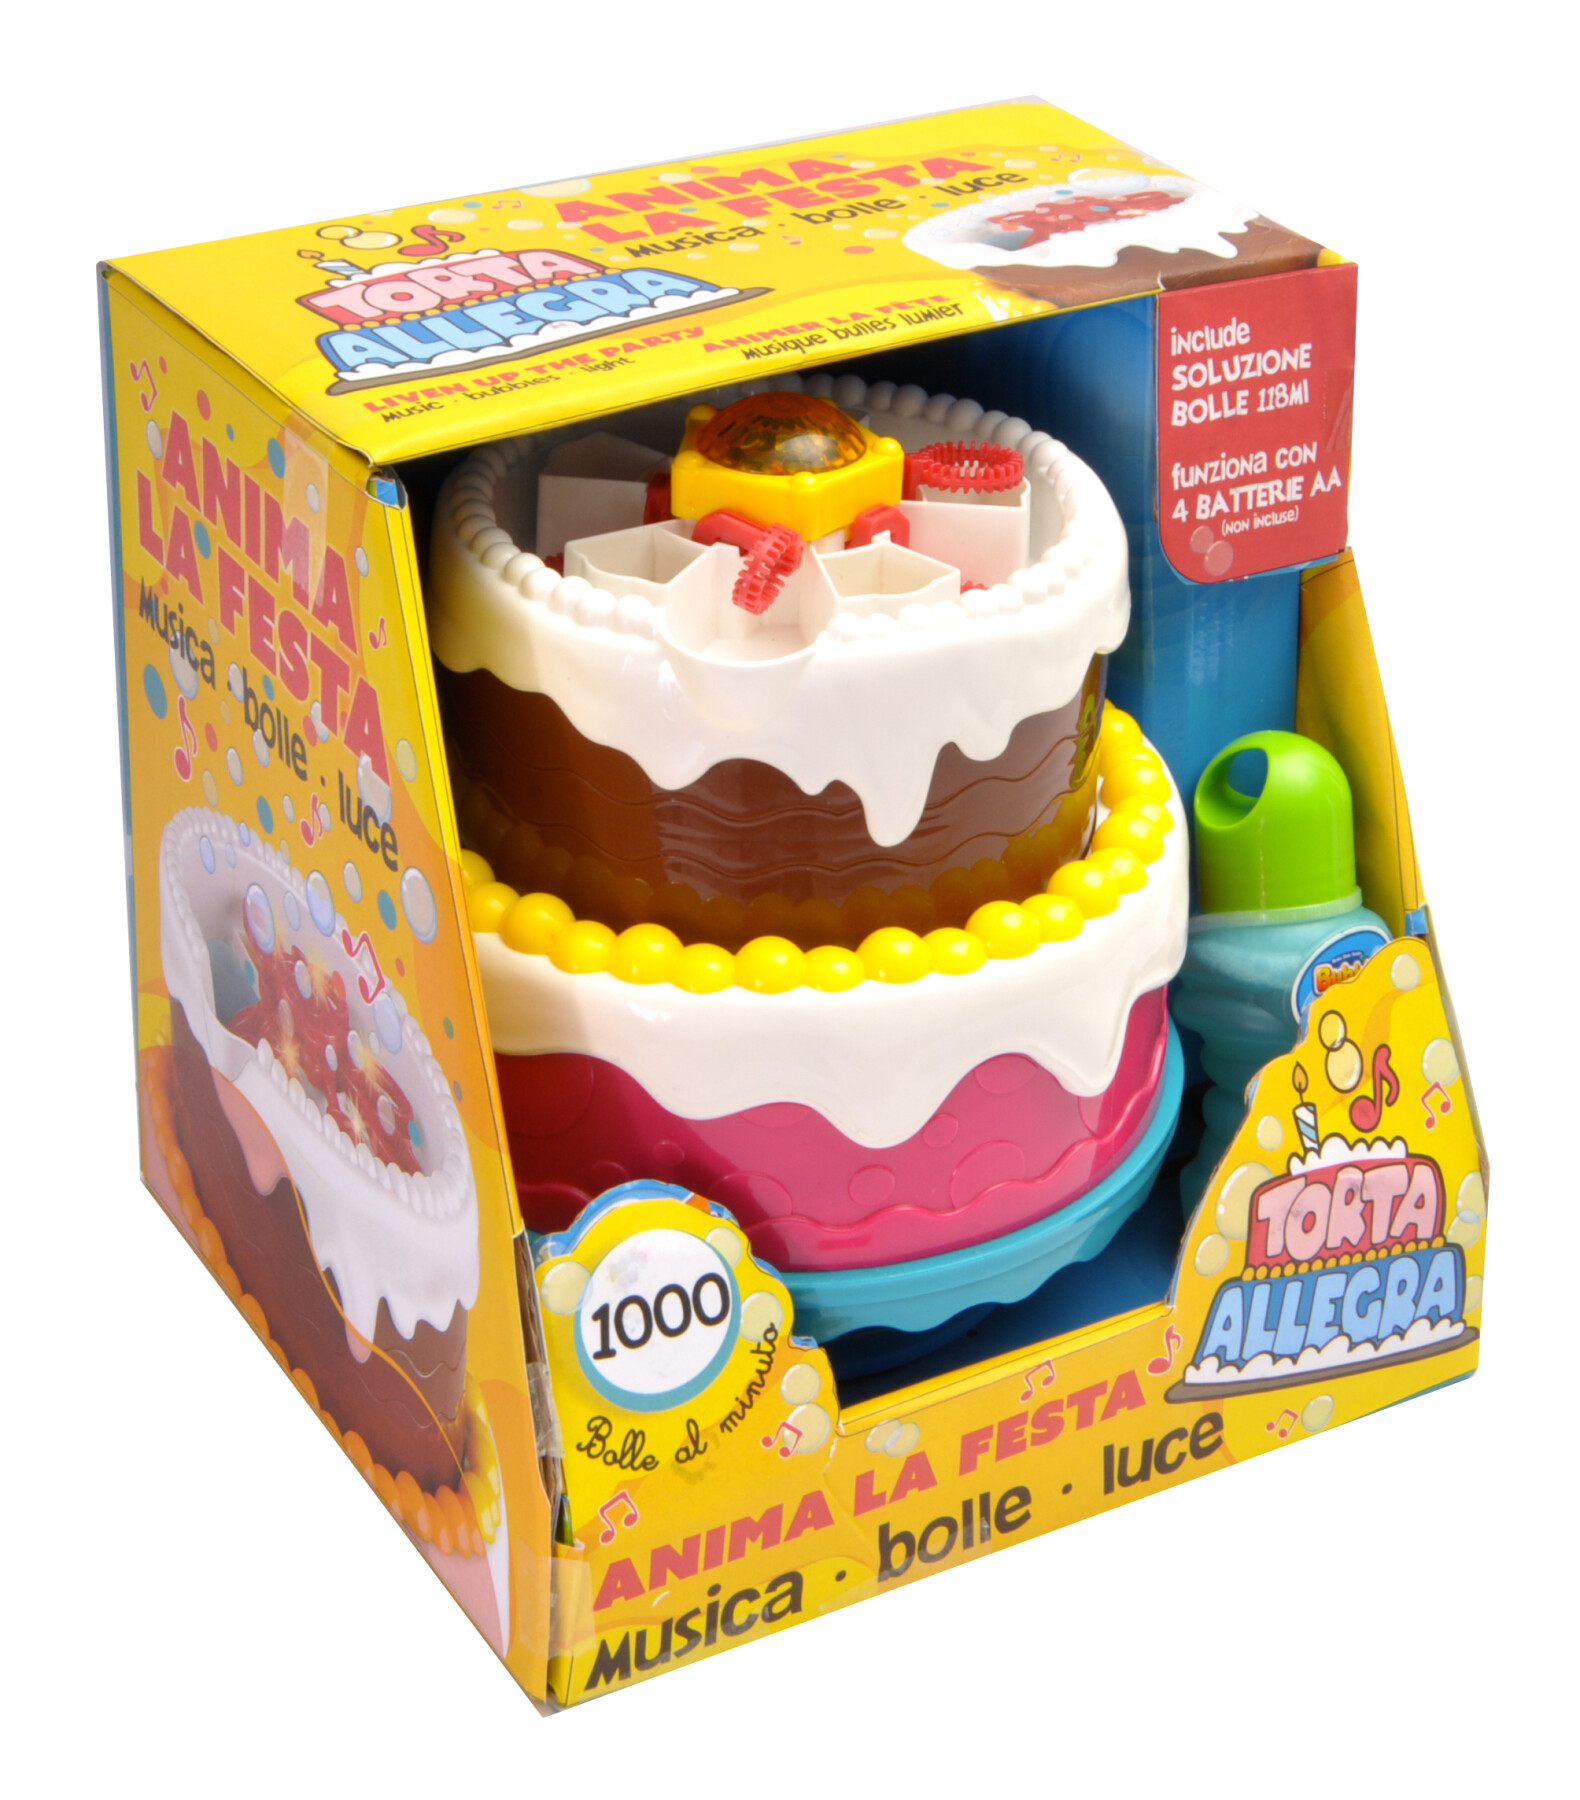 Coloratissima torta di compleanno sparabolle con luci e musica - Minnie